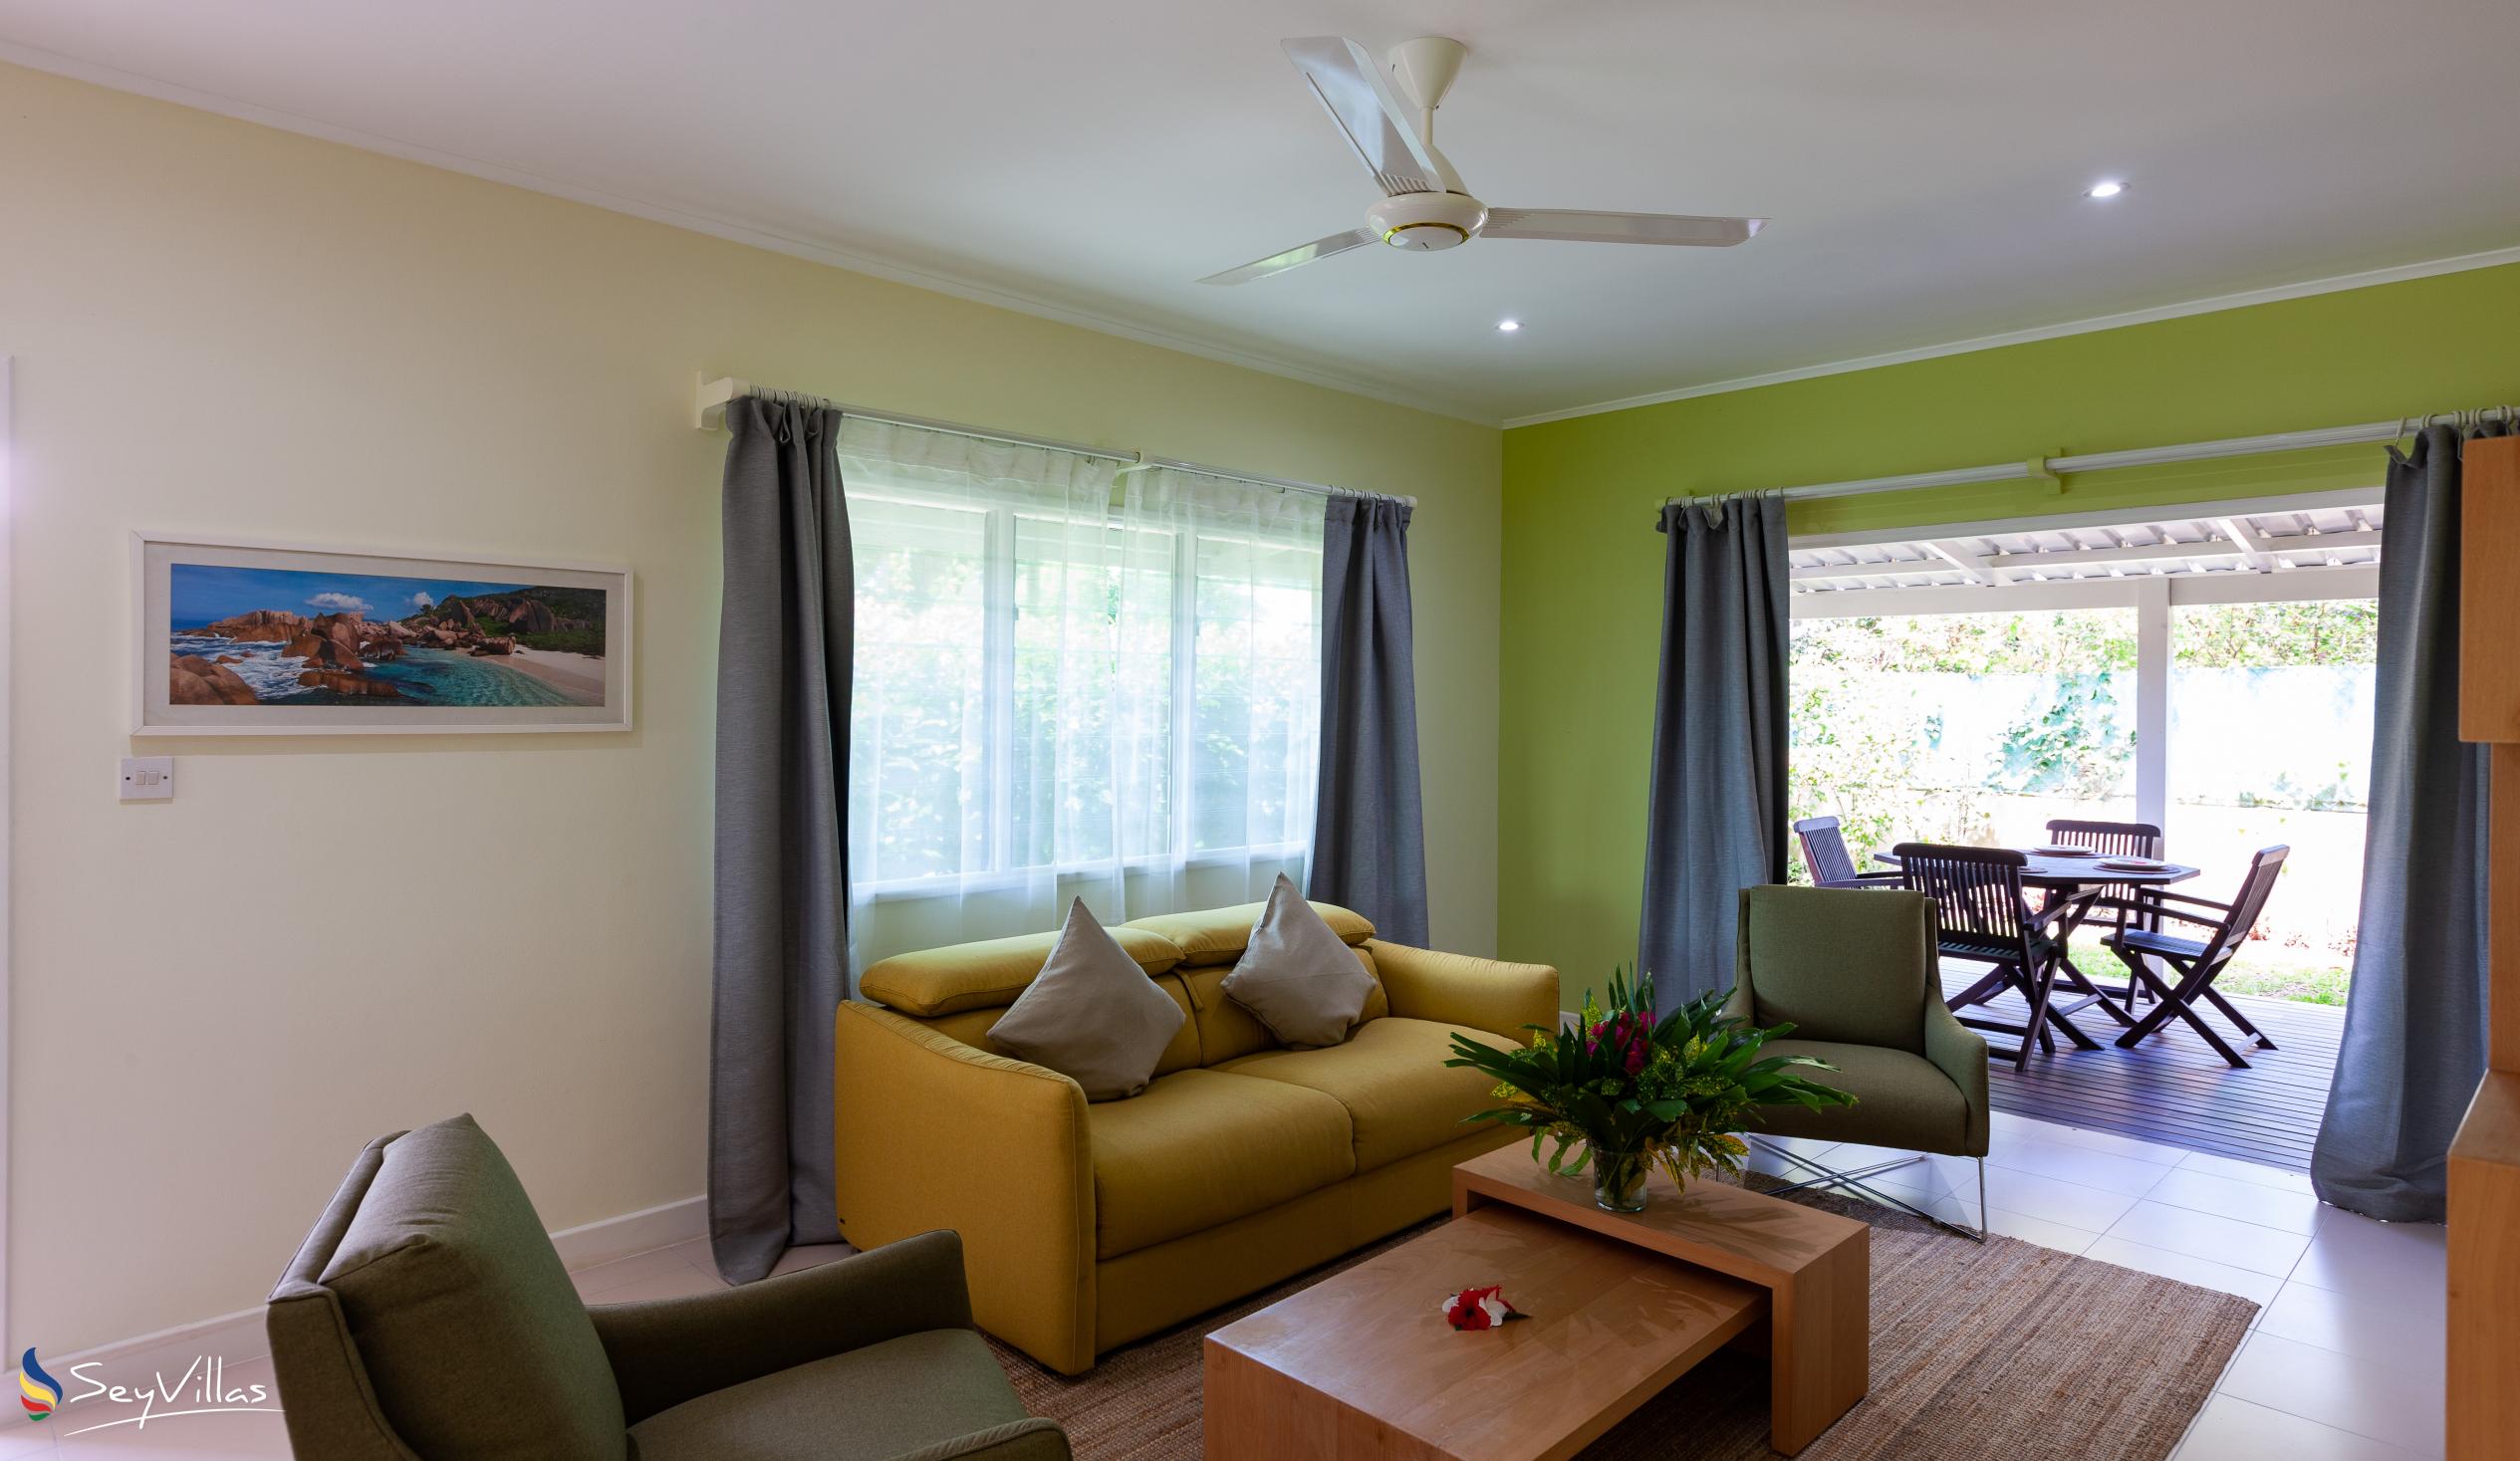 Foto 39: Residence Praslinoise - Familienappartement mit 2 Schlafzimmern (EG) - Praslin (Seychellen)